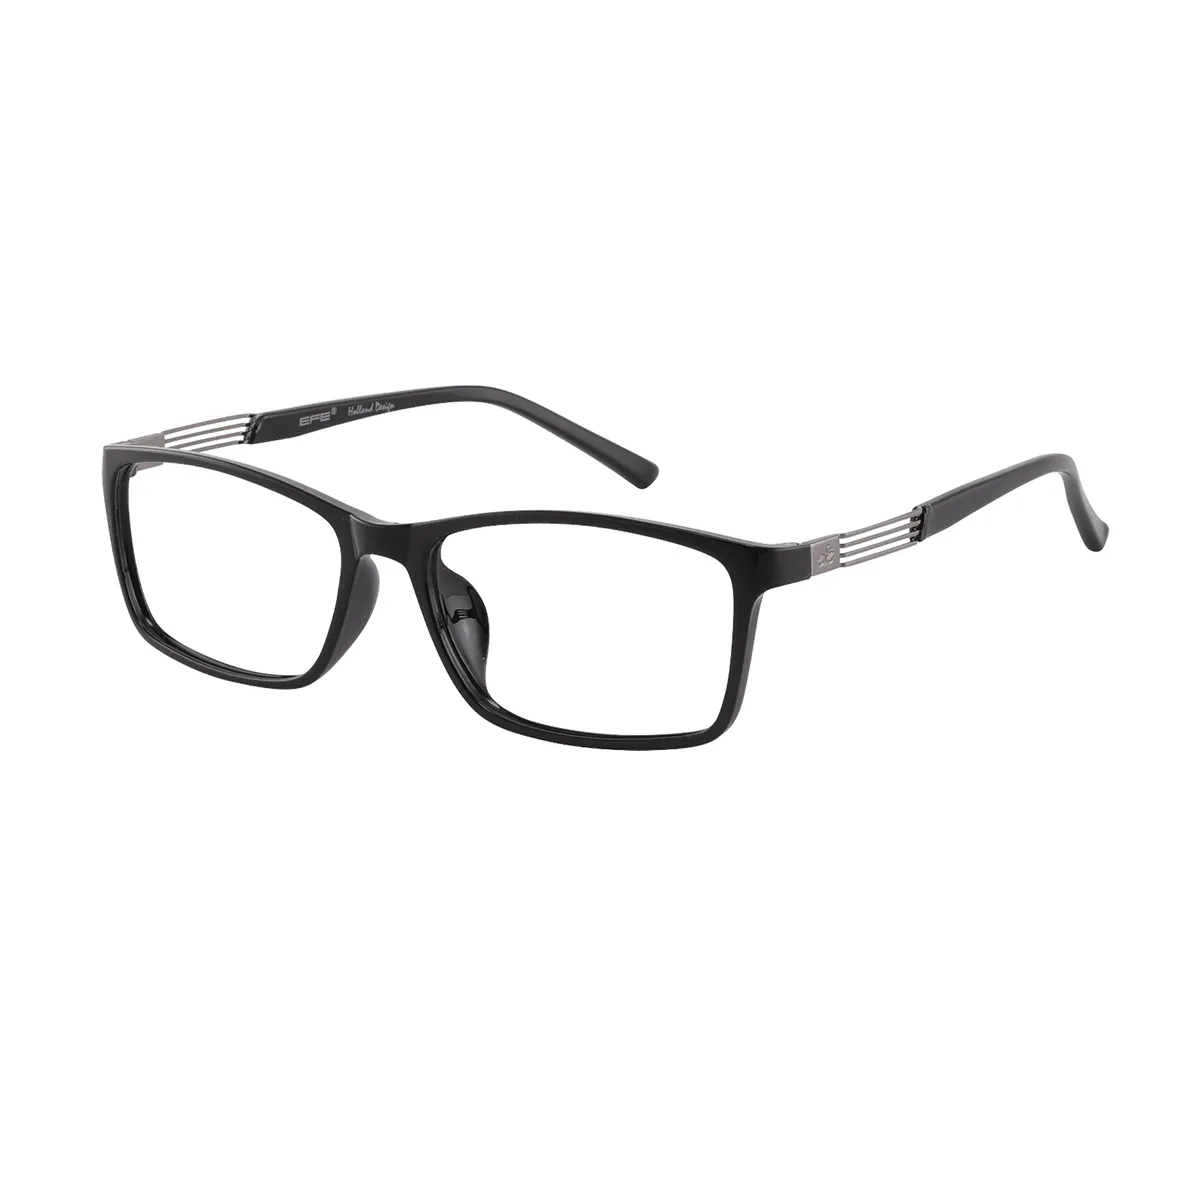 Classic Rectangle Black Glasses for Men & Women